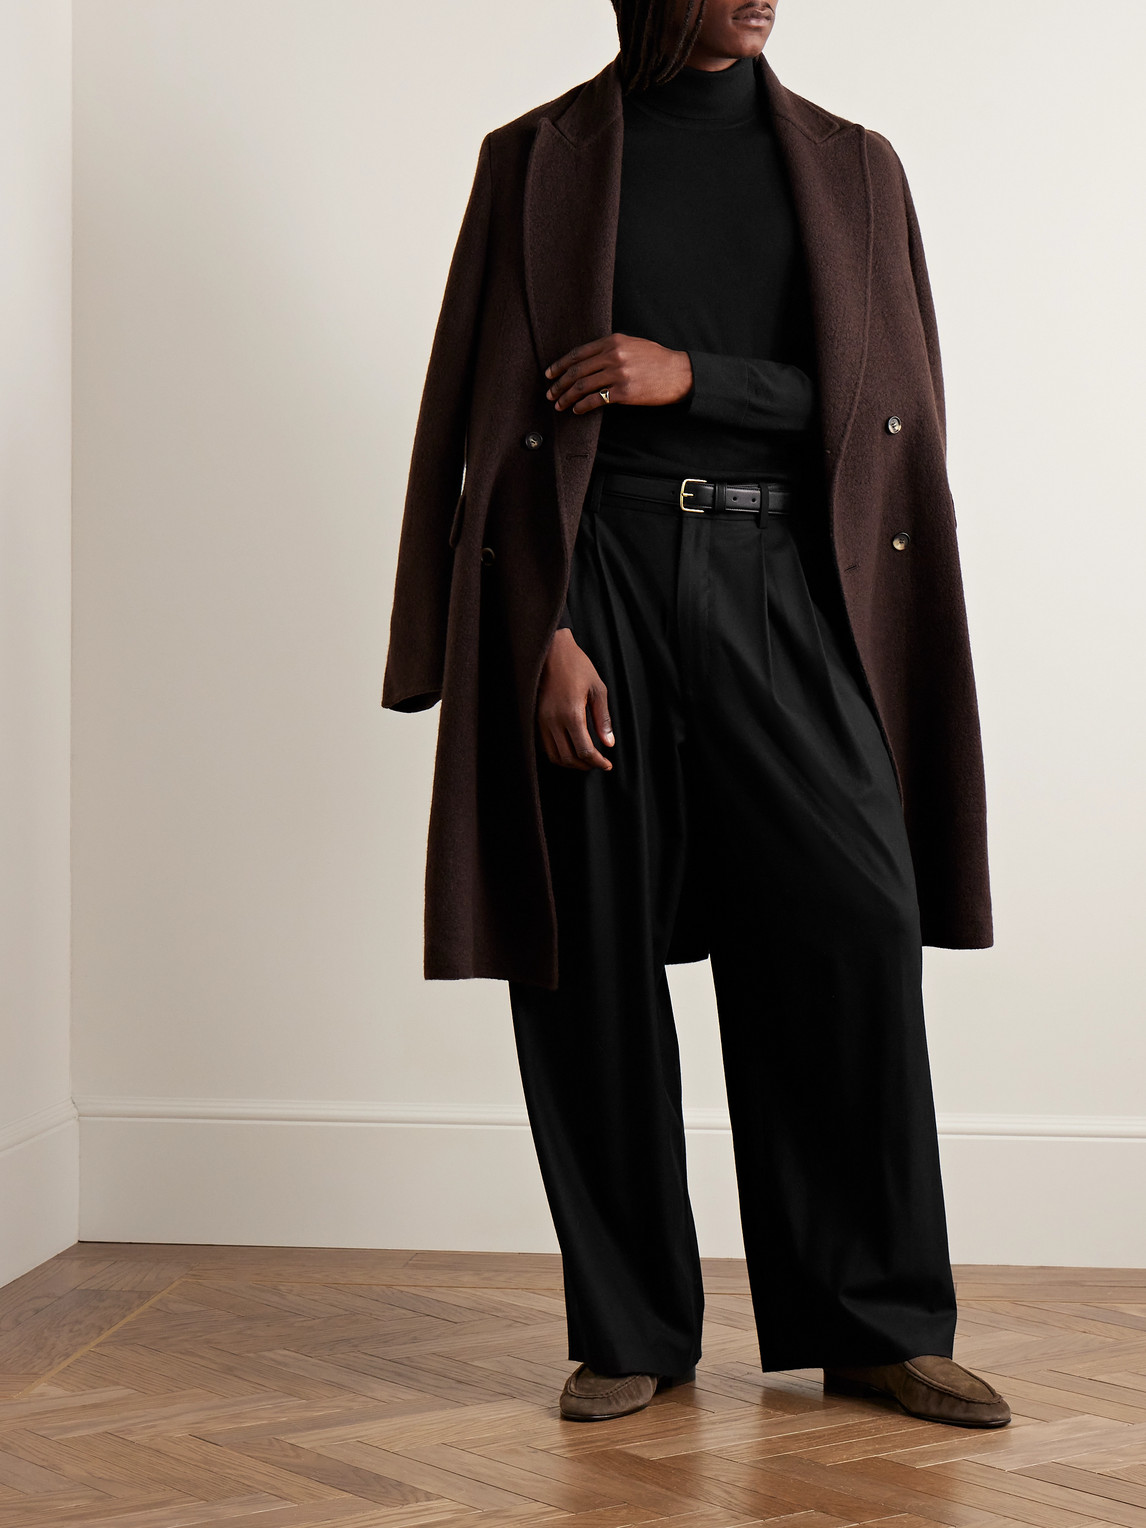 Shop Gabriela Hearst Jermaine Slim-fit Merino Wool Rollneck Sweater In Black